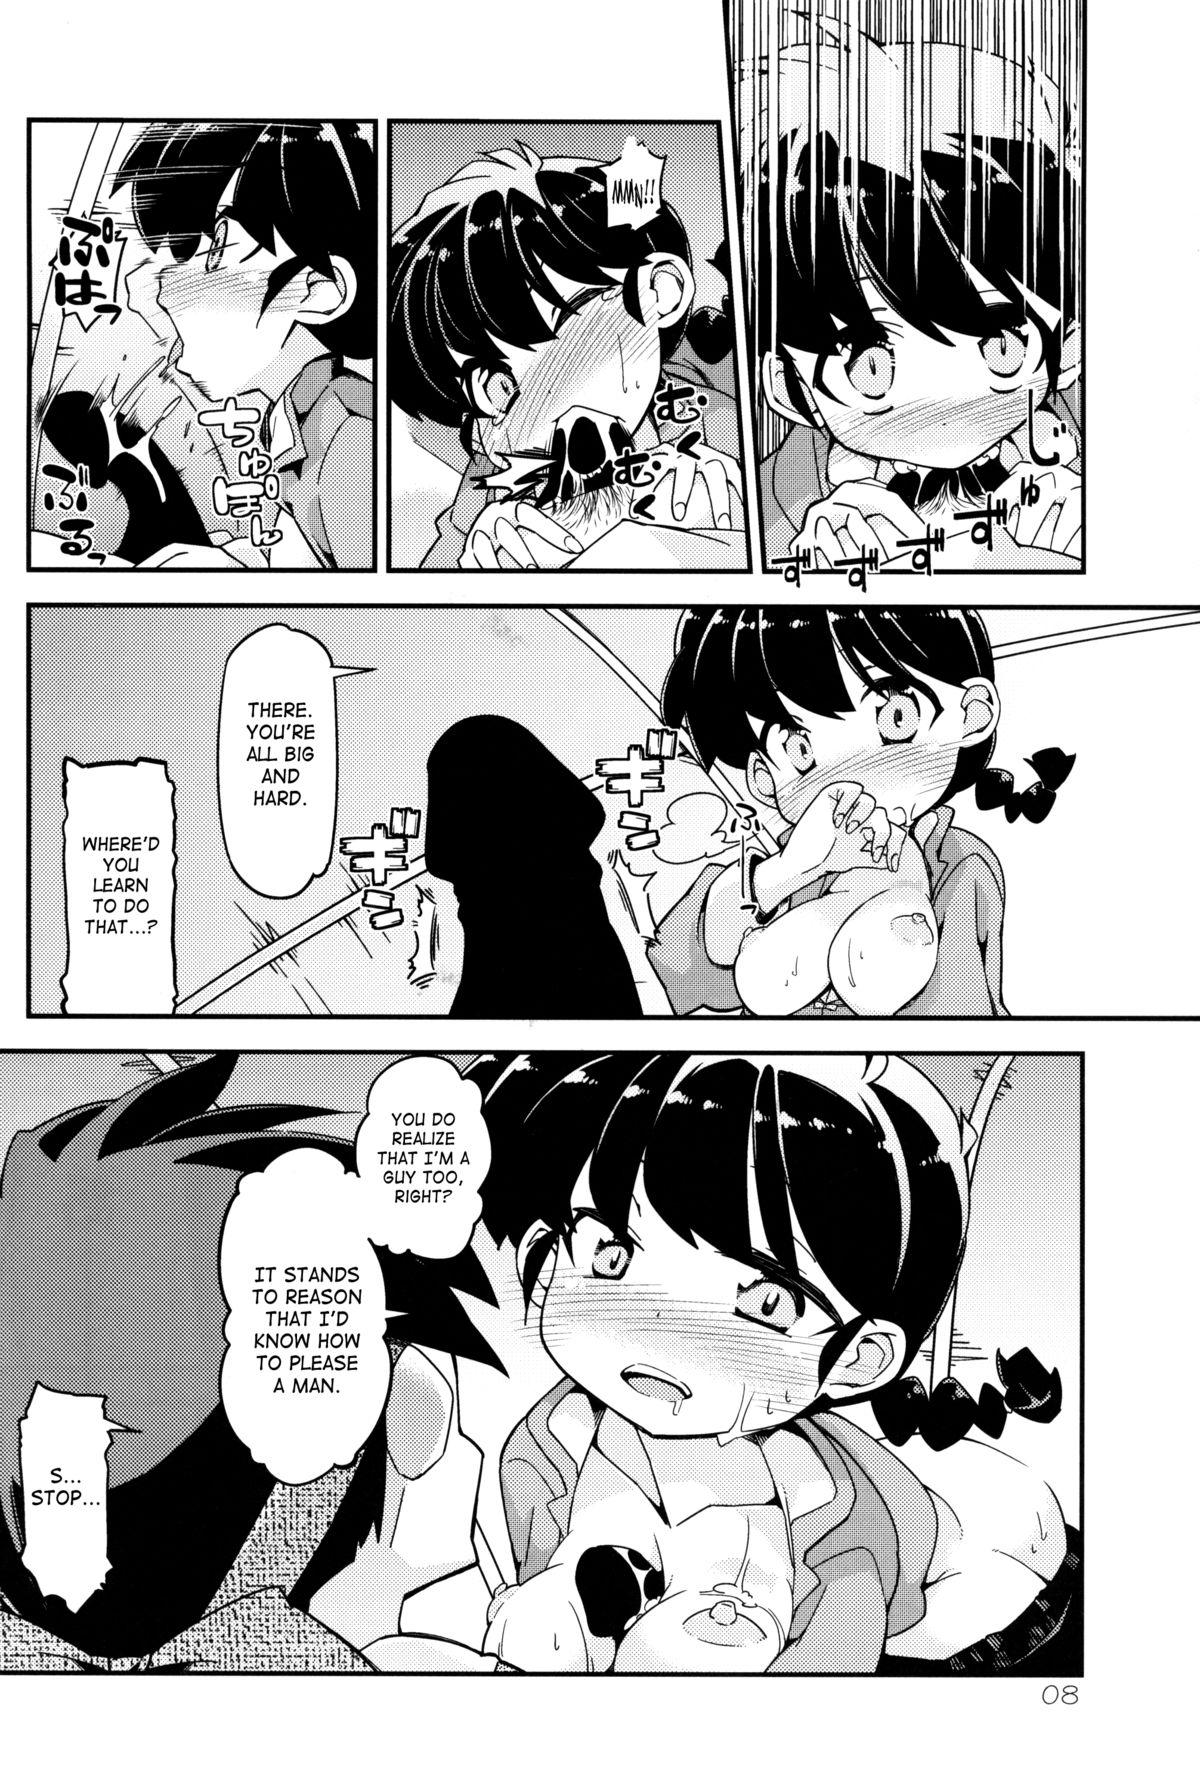 Koi no Tsurizao de Tsurarete Shimata Ranma ga Ryouga to Nyan Nyan suru Manga 6